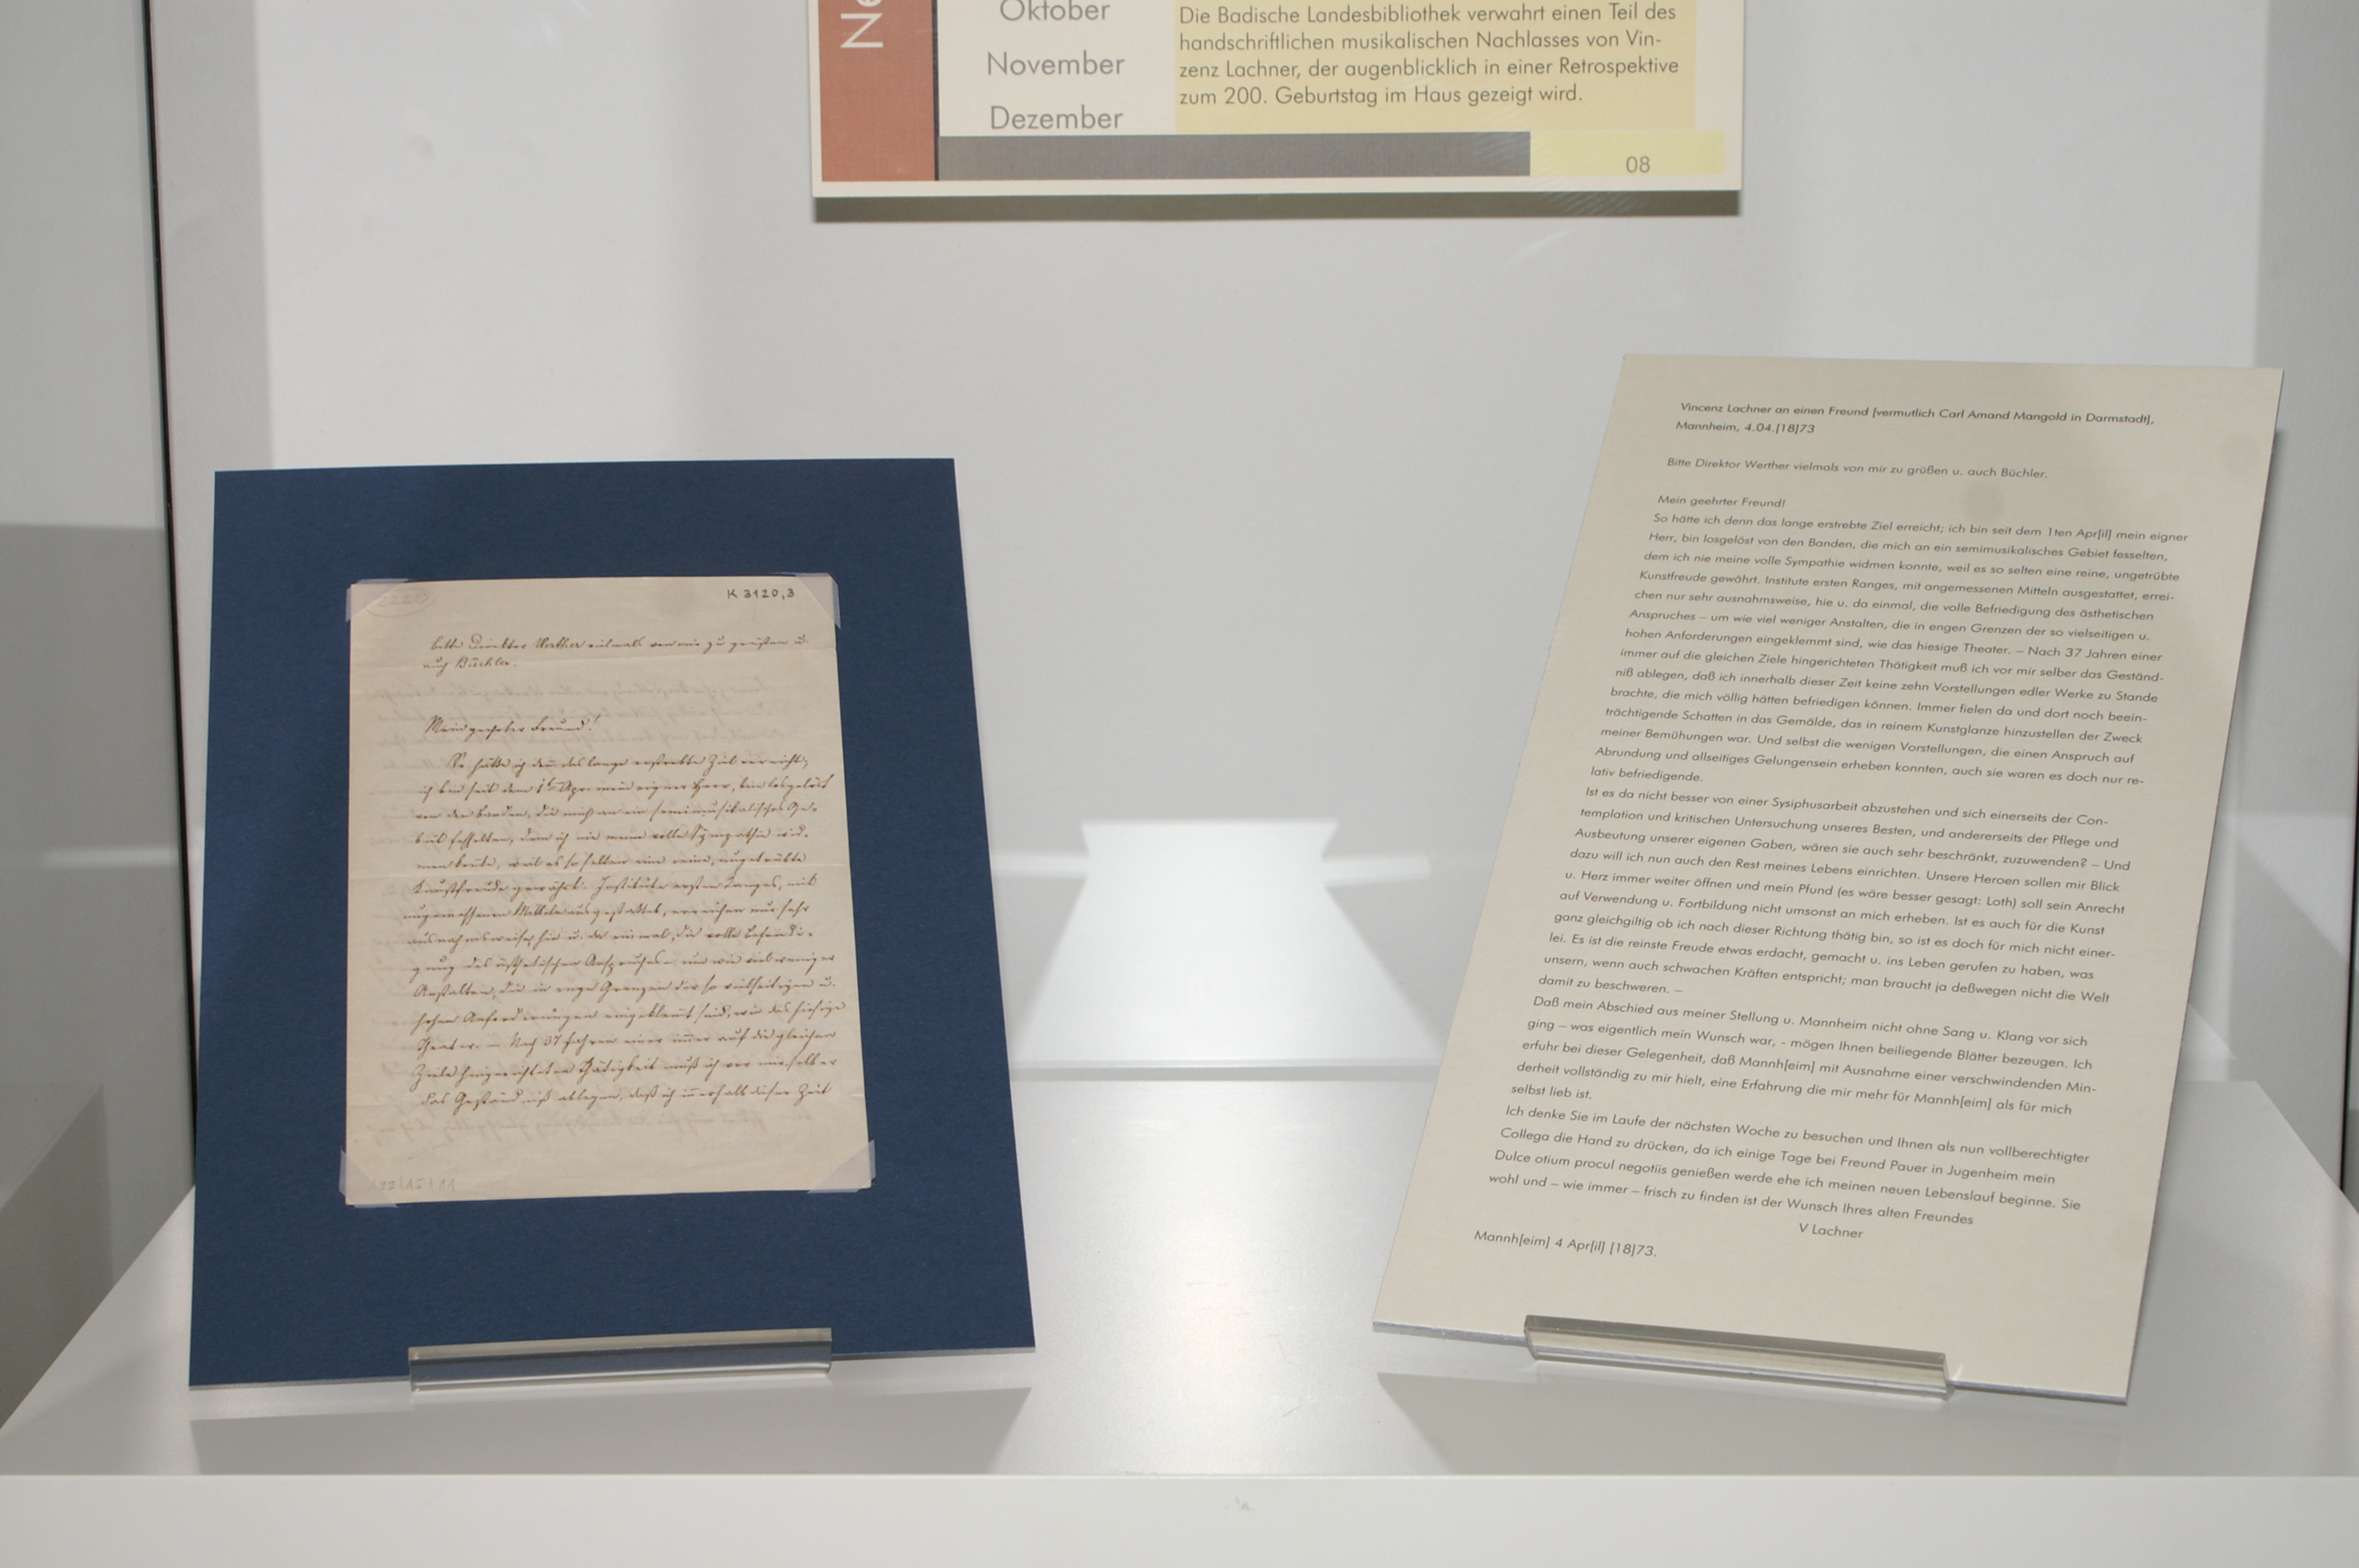 Ausgestellt ist der Brief von Vinzenz Lachner an Carl Amand Mangold, daneben ein Transkript des Briefs.